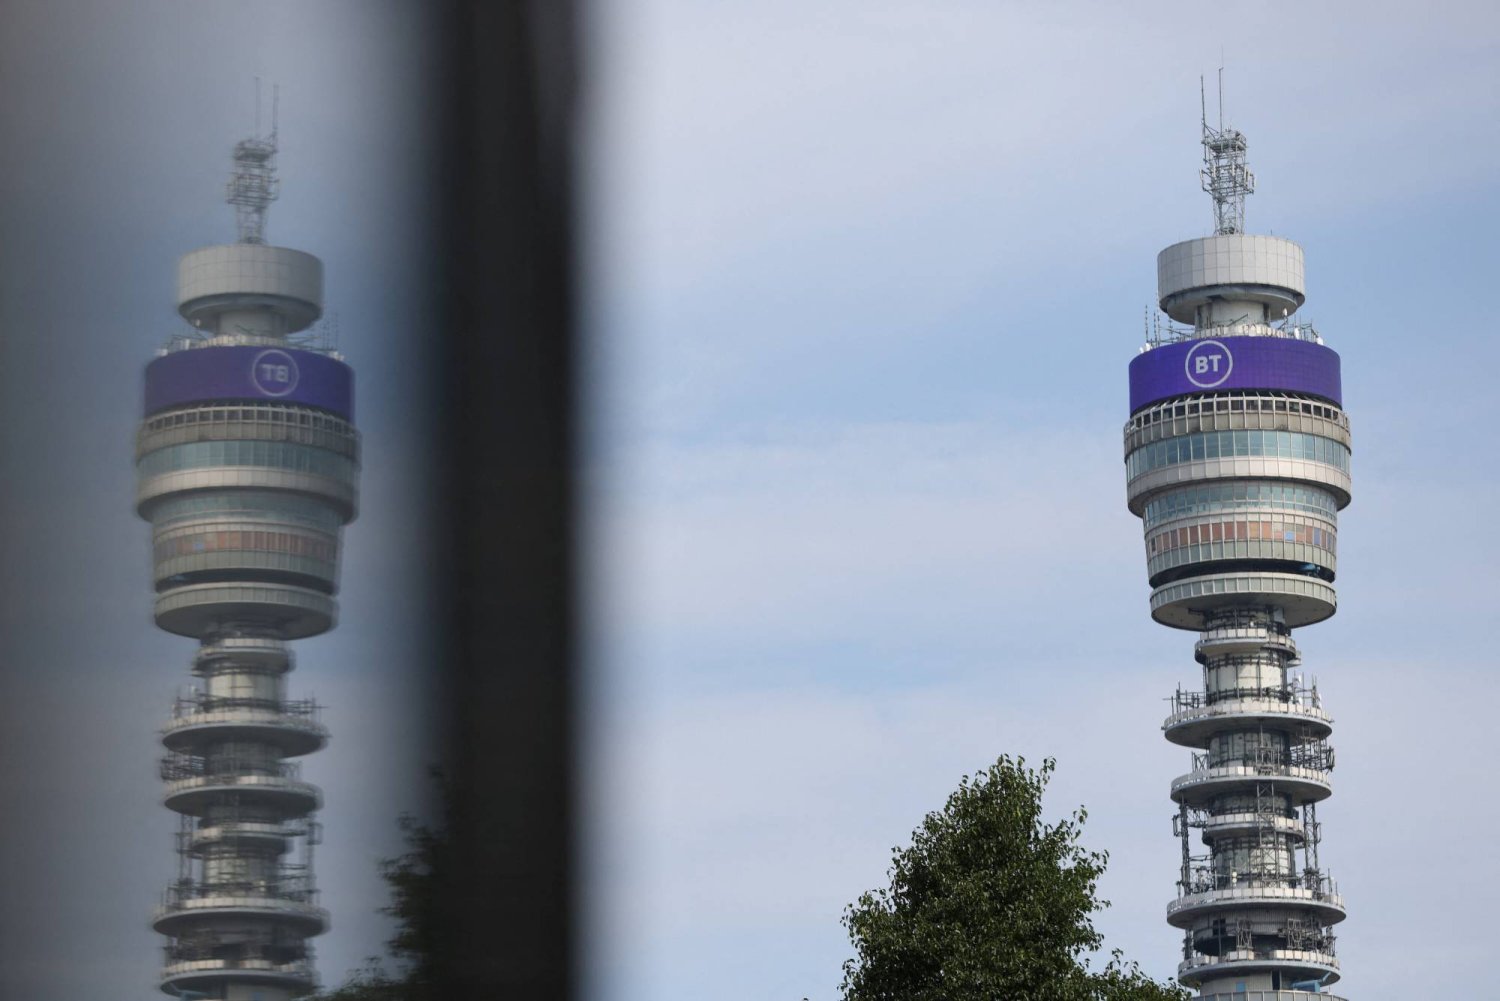 يُعدّ برج «بي تي» علامة بارزة في تاريخ الاتصالات البريطانية حيث كان يُشكل قطعة مهمة في البنية التحتية للشبكة (رويترز)